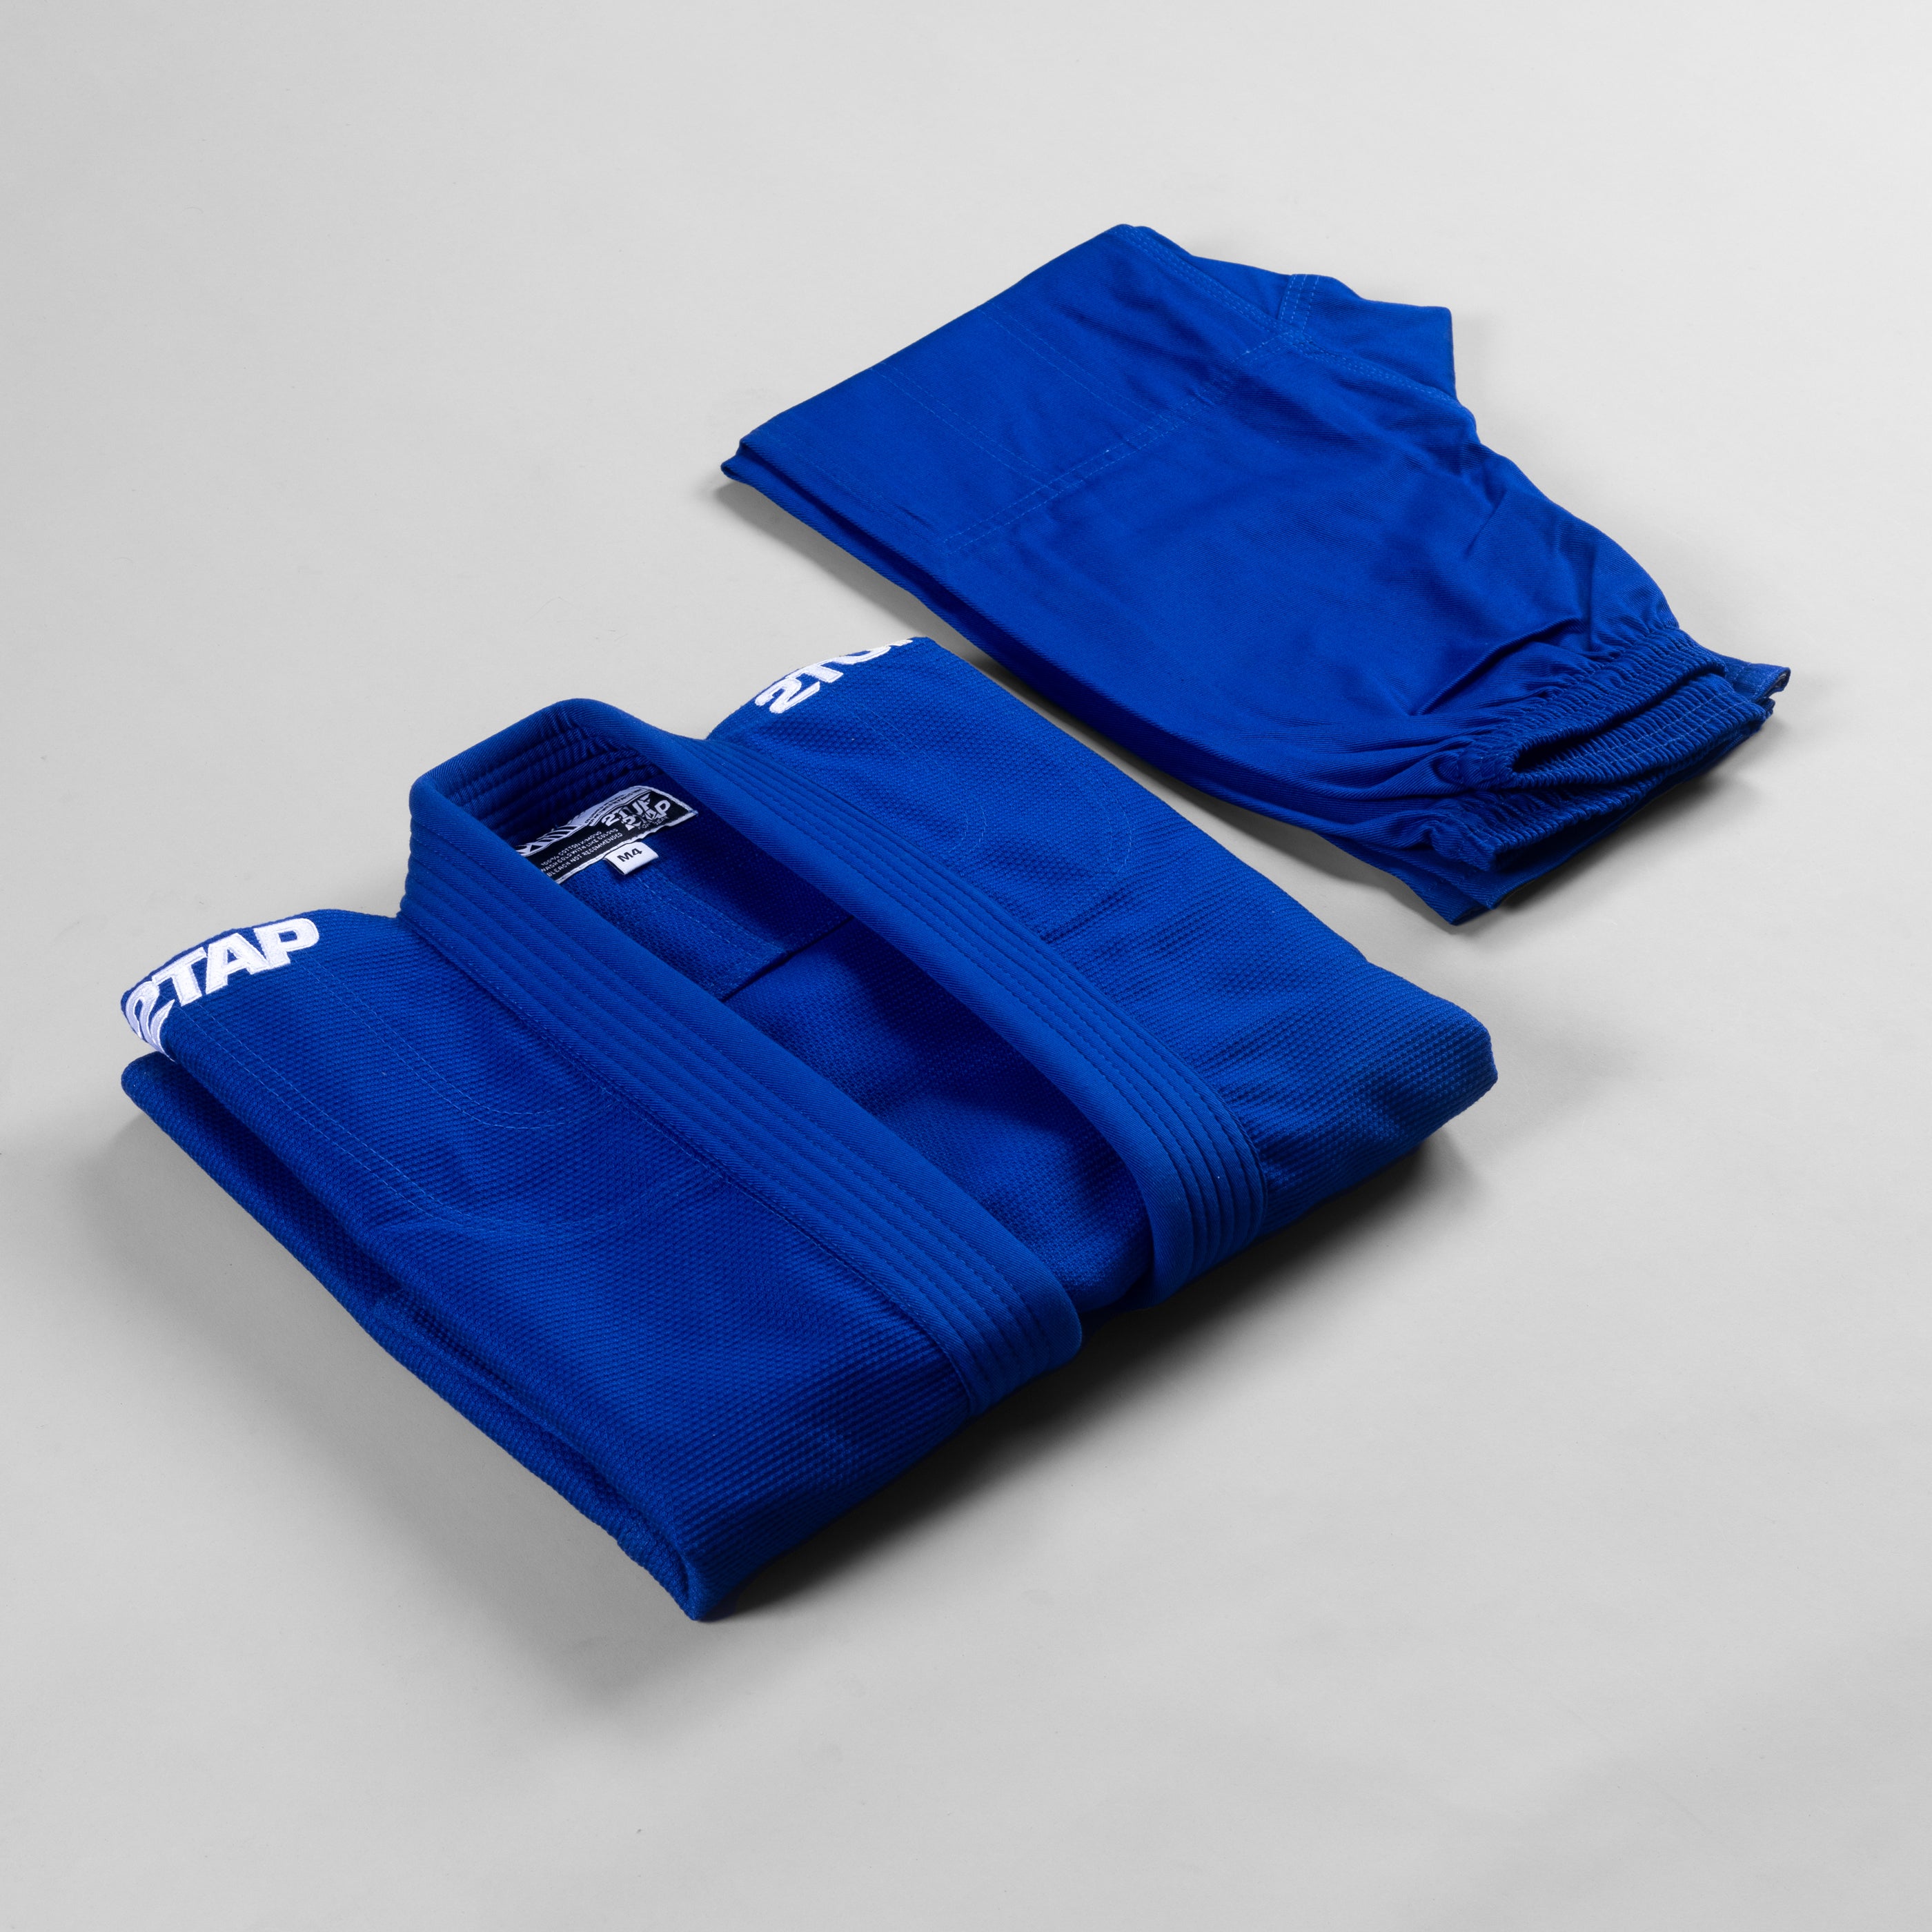 'Base' Jiu-Jitsu Gi Uniform - Blue/White 2TUF2TAP